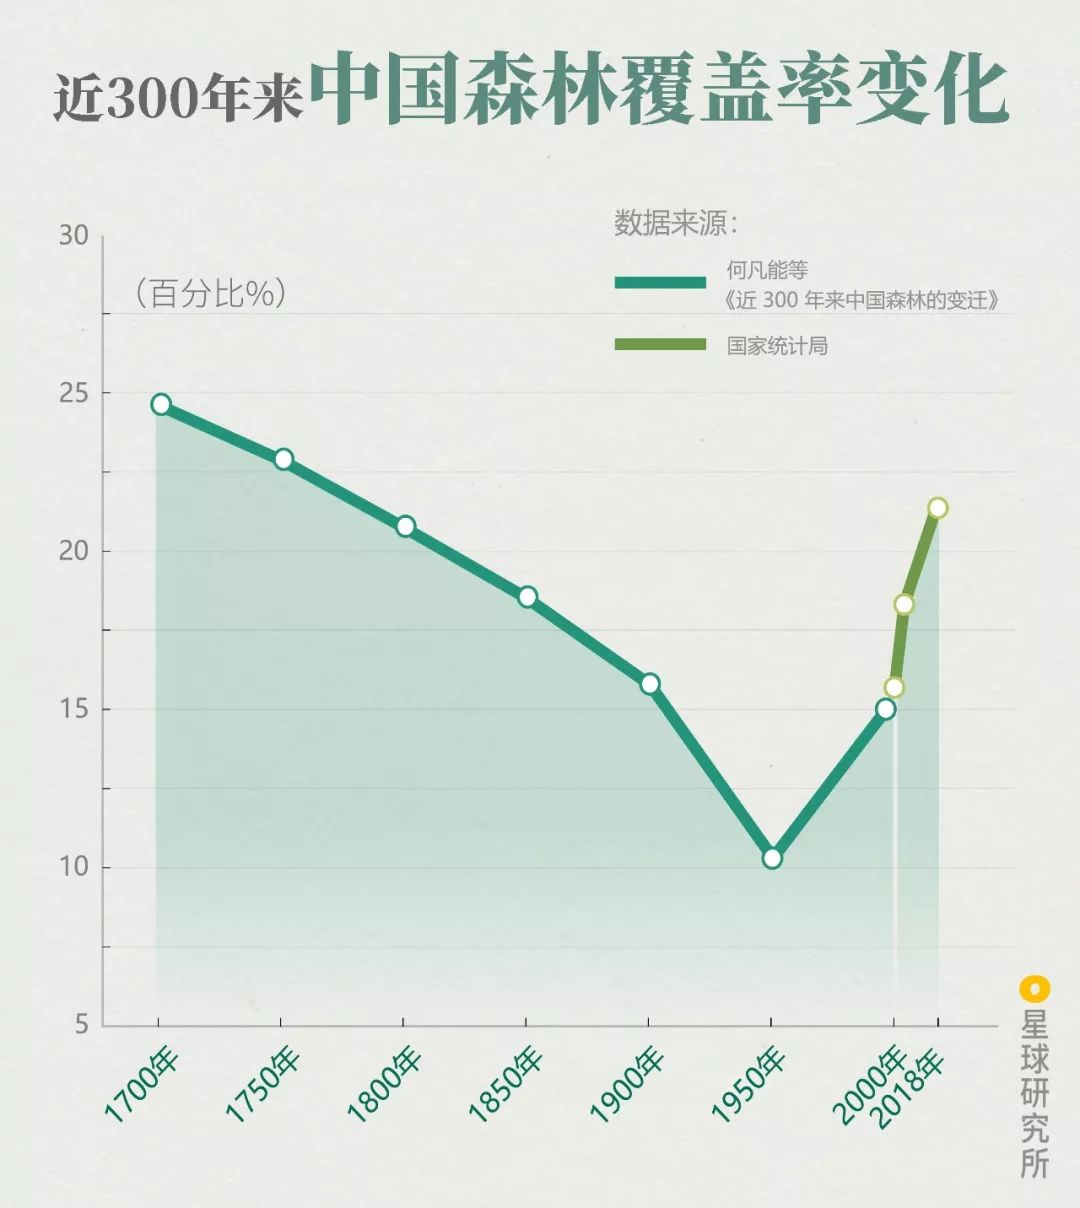 近300年来中国森林覆盖率变化趋势，根据国家统计局数据，截至2018年，我国森林覆盖率为21.6%，制图@郑伯容 赵榜/星球研究所